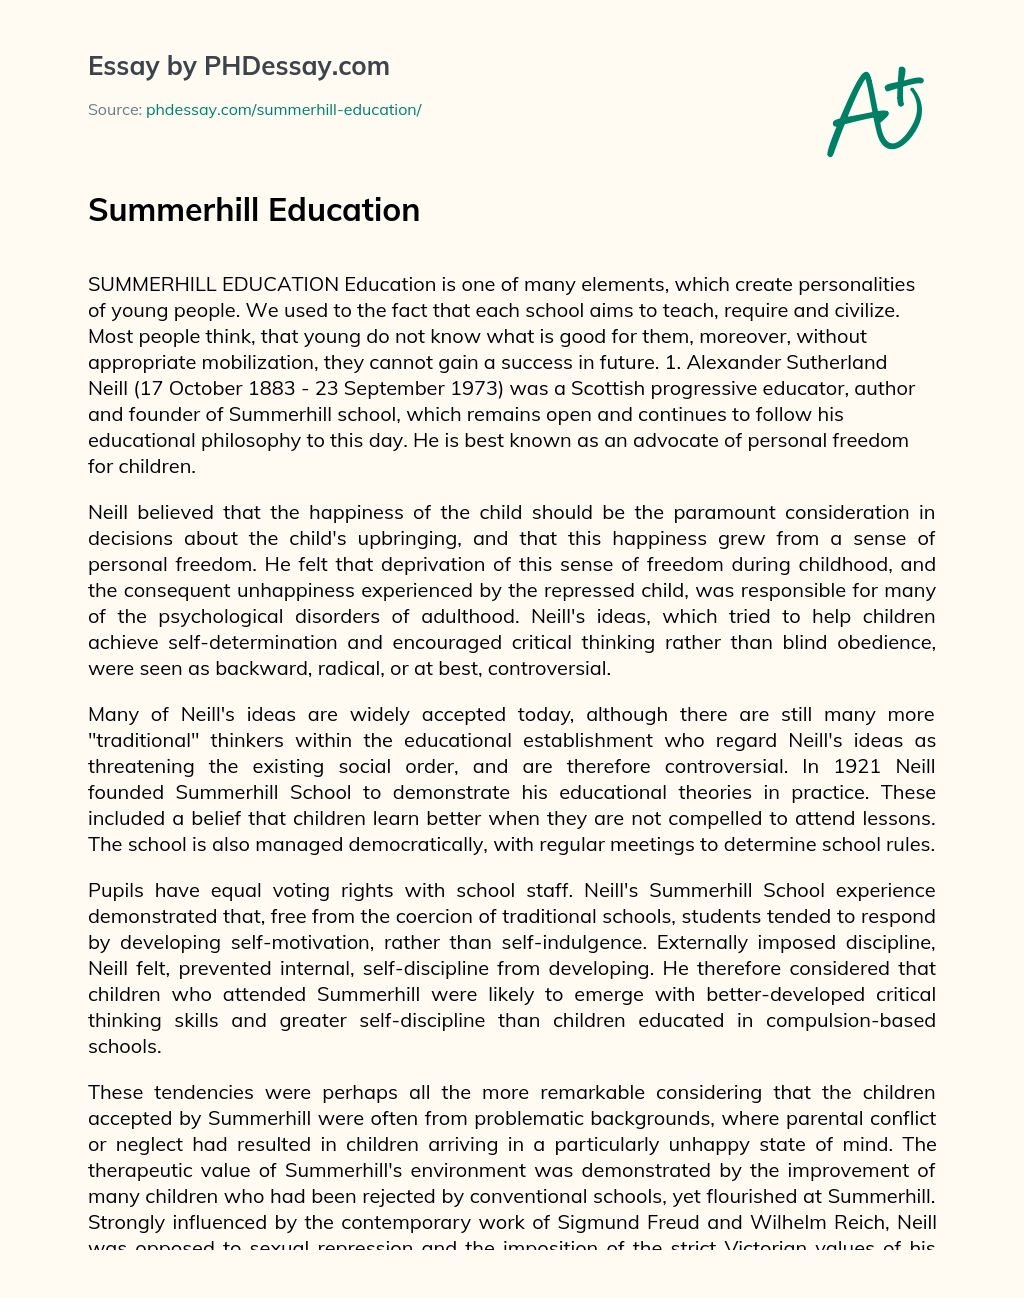 Education at Summerhill essay